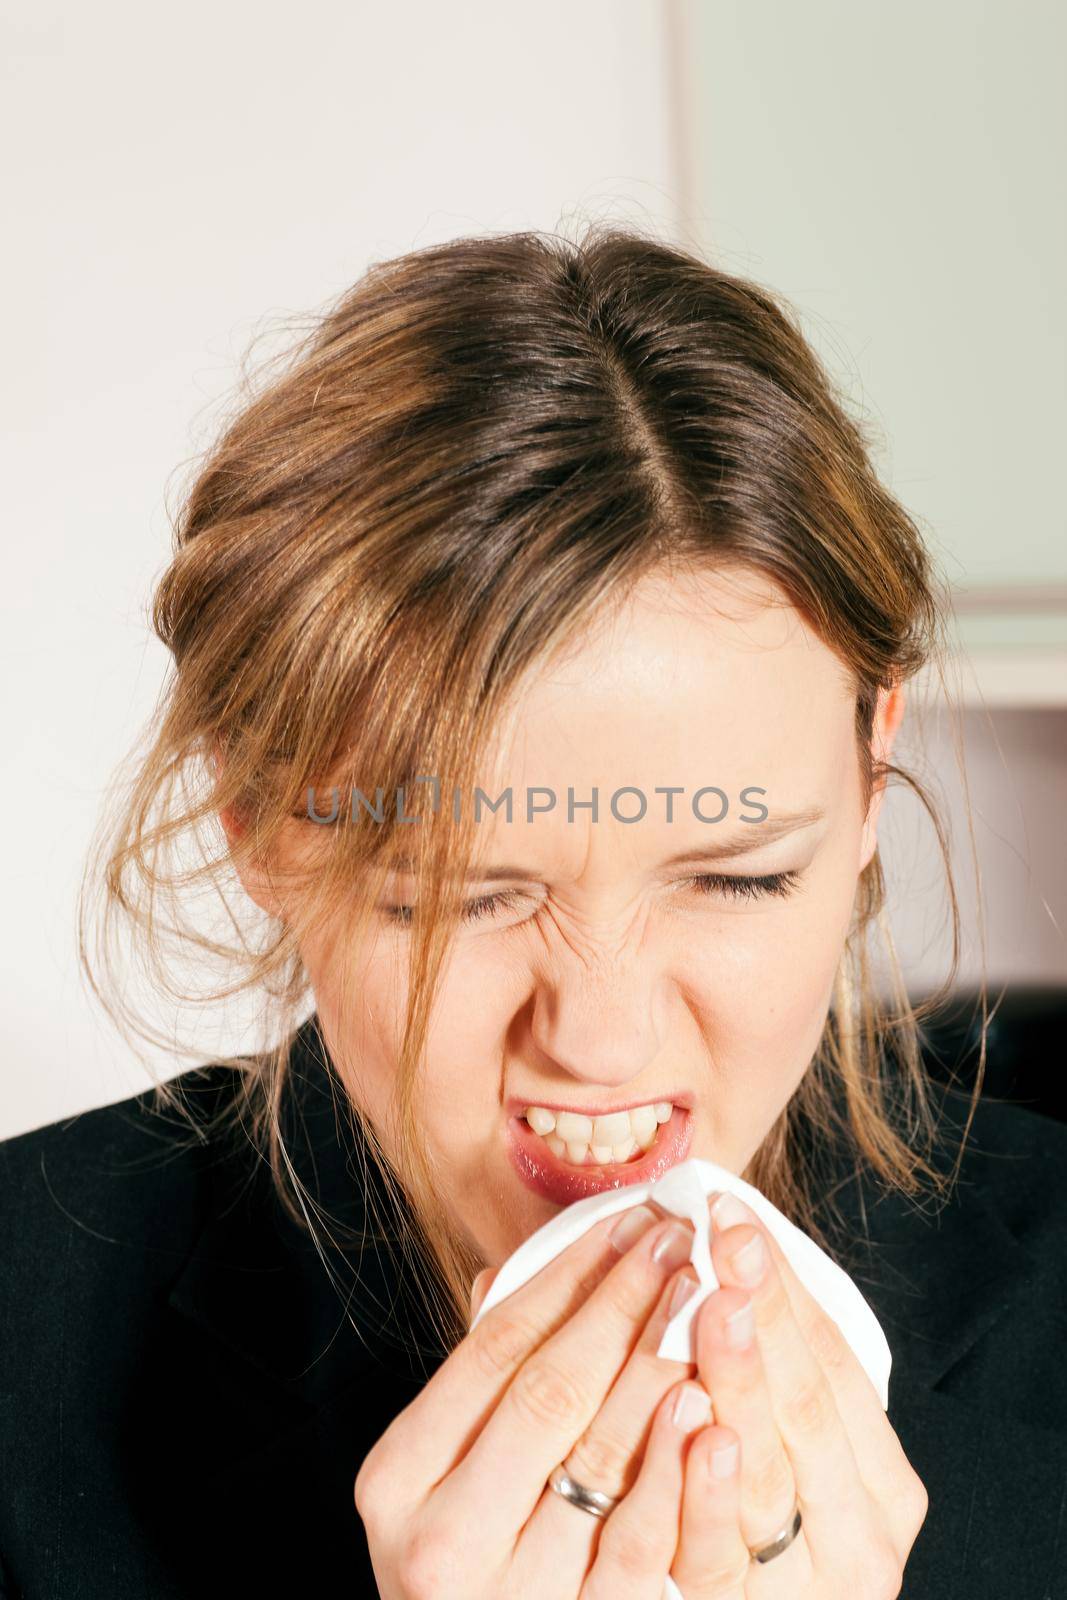 Woman sneezing by Kzenon